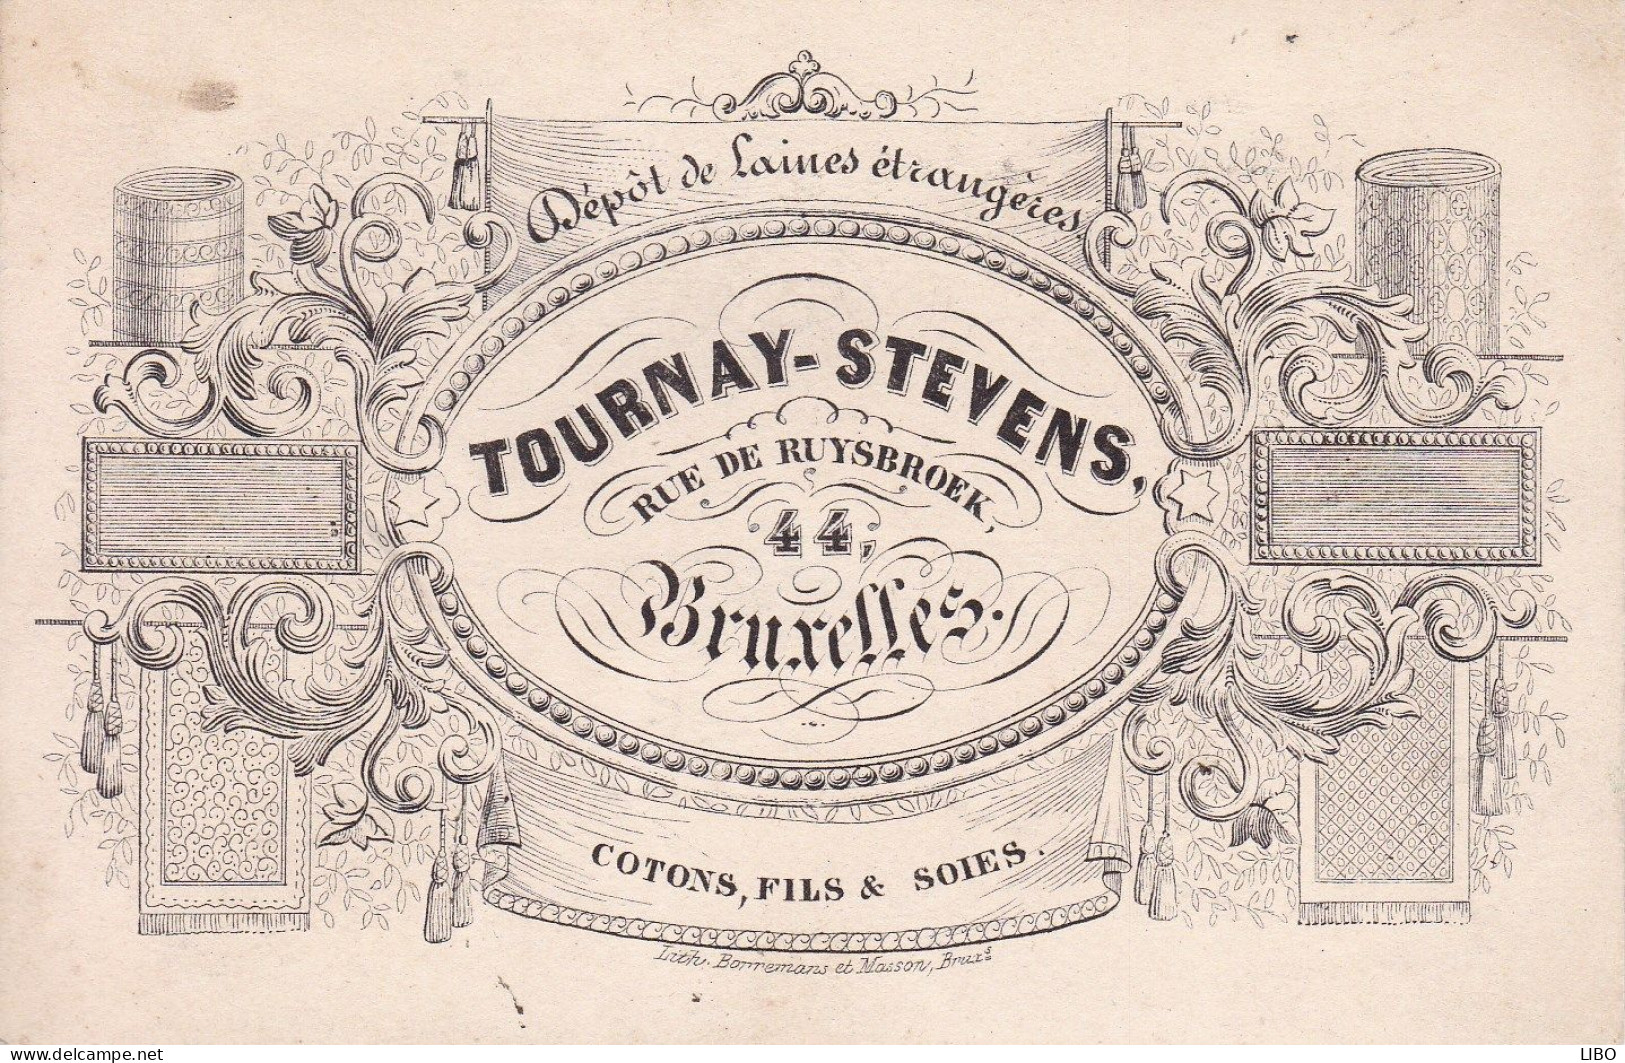 BRUXELLES Laines TOURNAY-STEVENS Rue De Ruysbroek Cotons Fils Et Soies Carte De Visite Format Carte Postale C. 1860 - Visitenkarten